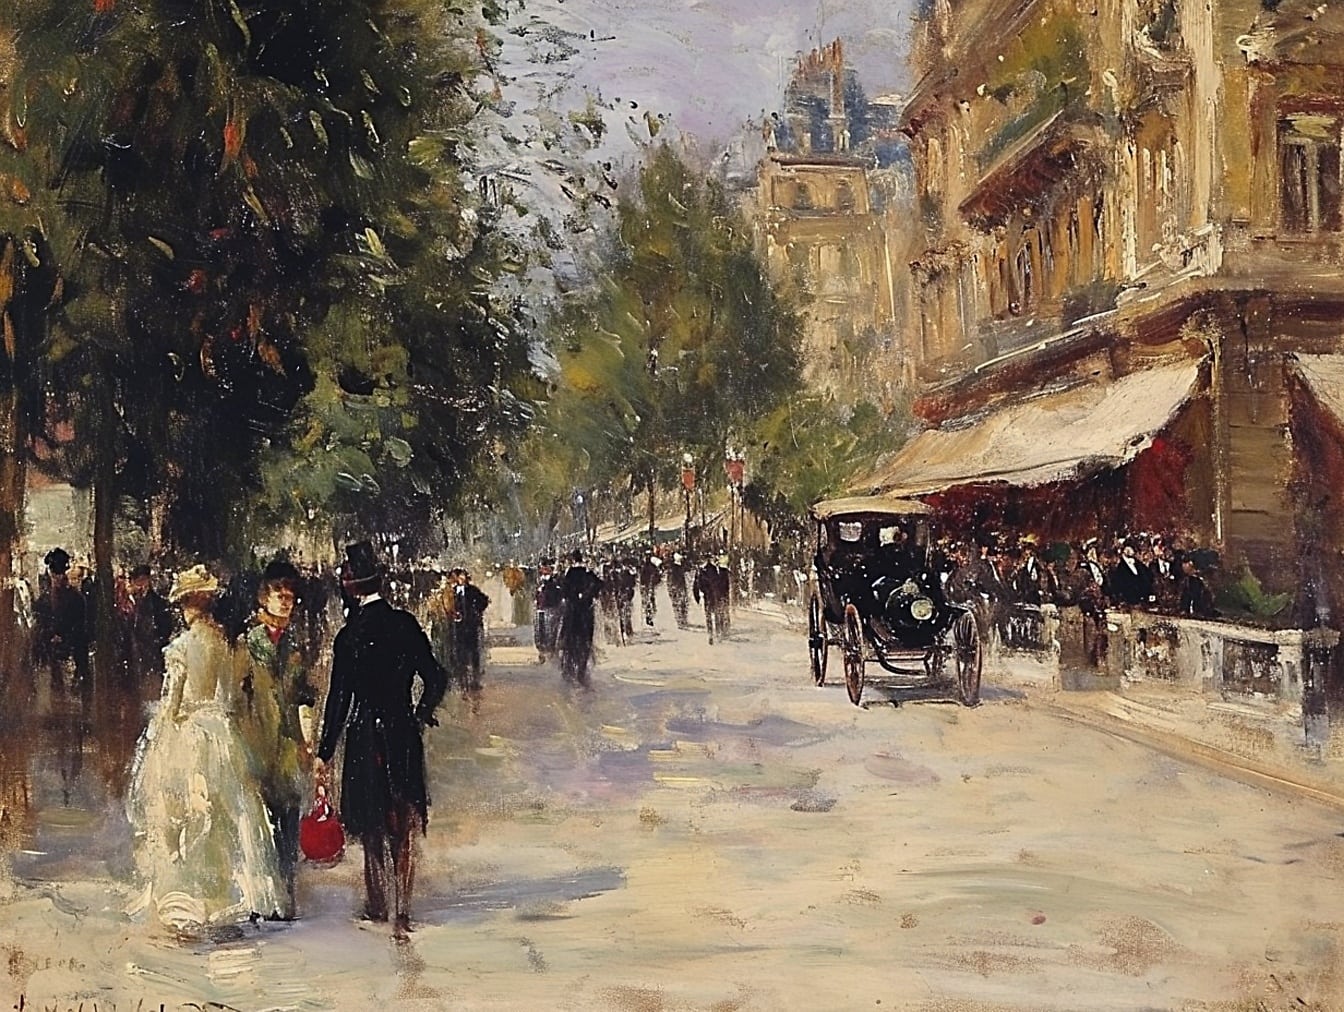 Bức tranh sơn dầu của những người đi bộ trên một con phố ở trung tâm thành phố mô tả lối sống thế kỷ 19